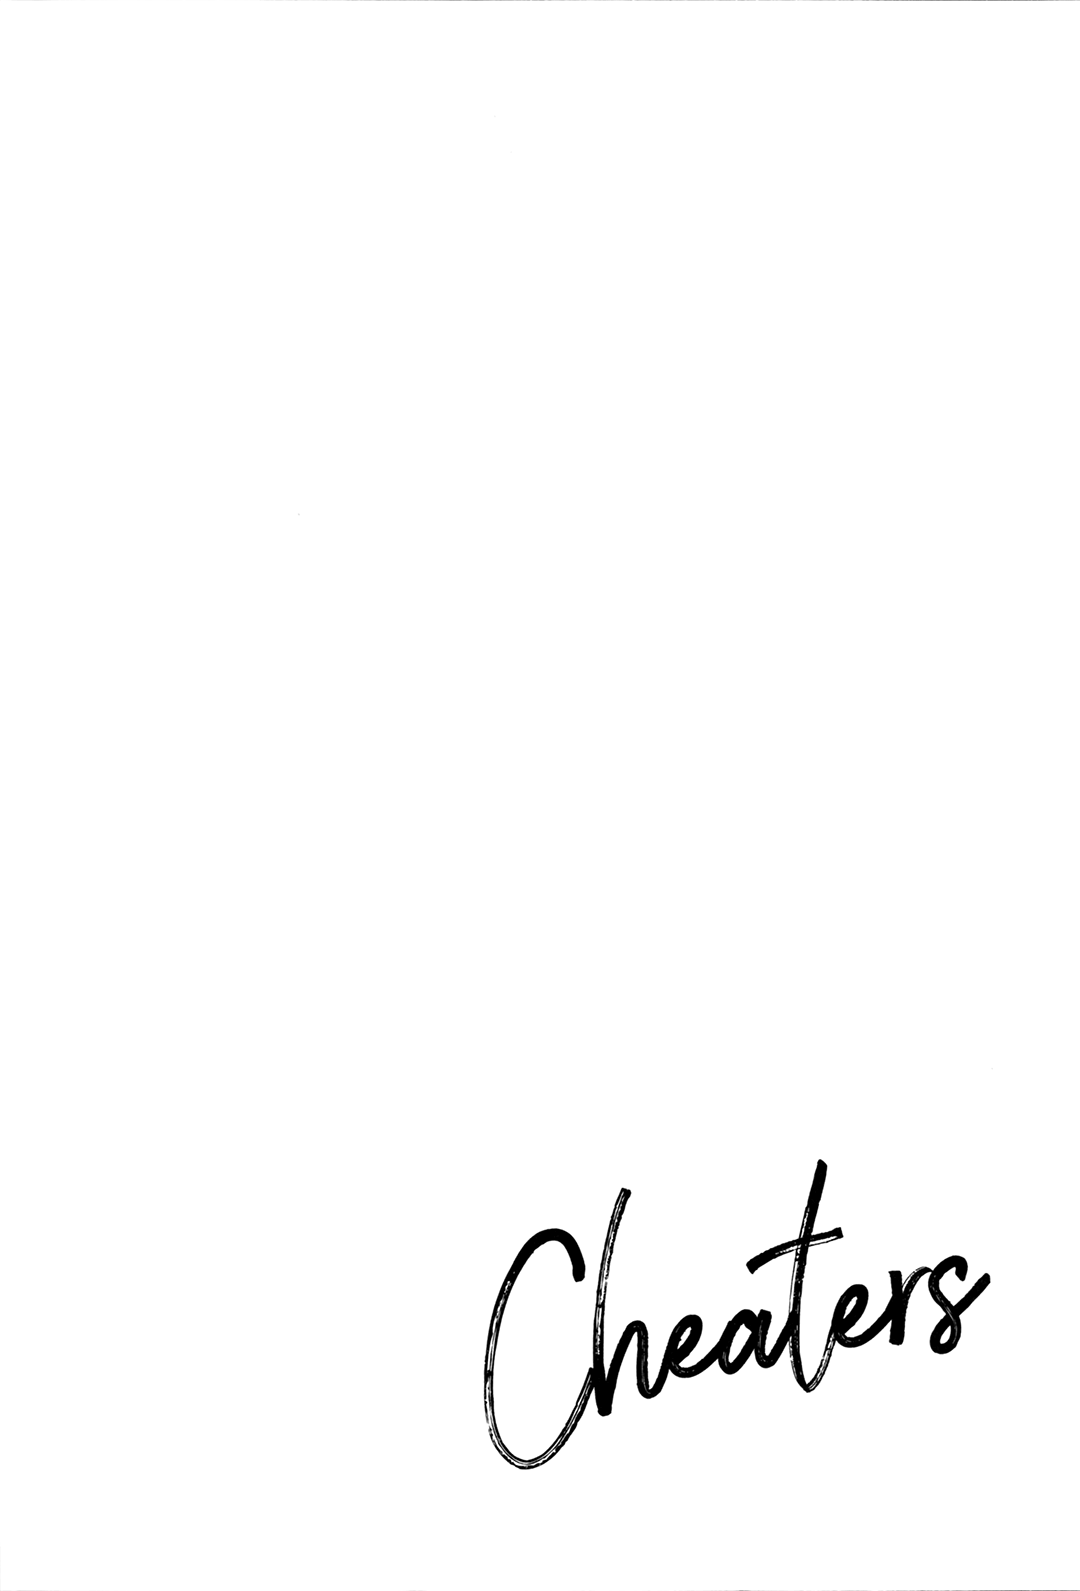 (ザ・ワールド16) [鶴町 (ガマ子)] Cheaters (ジョジョの奇妙な冒険)